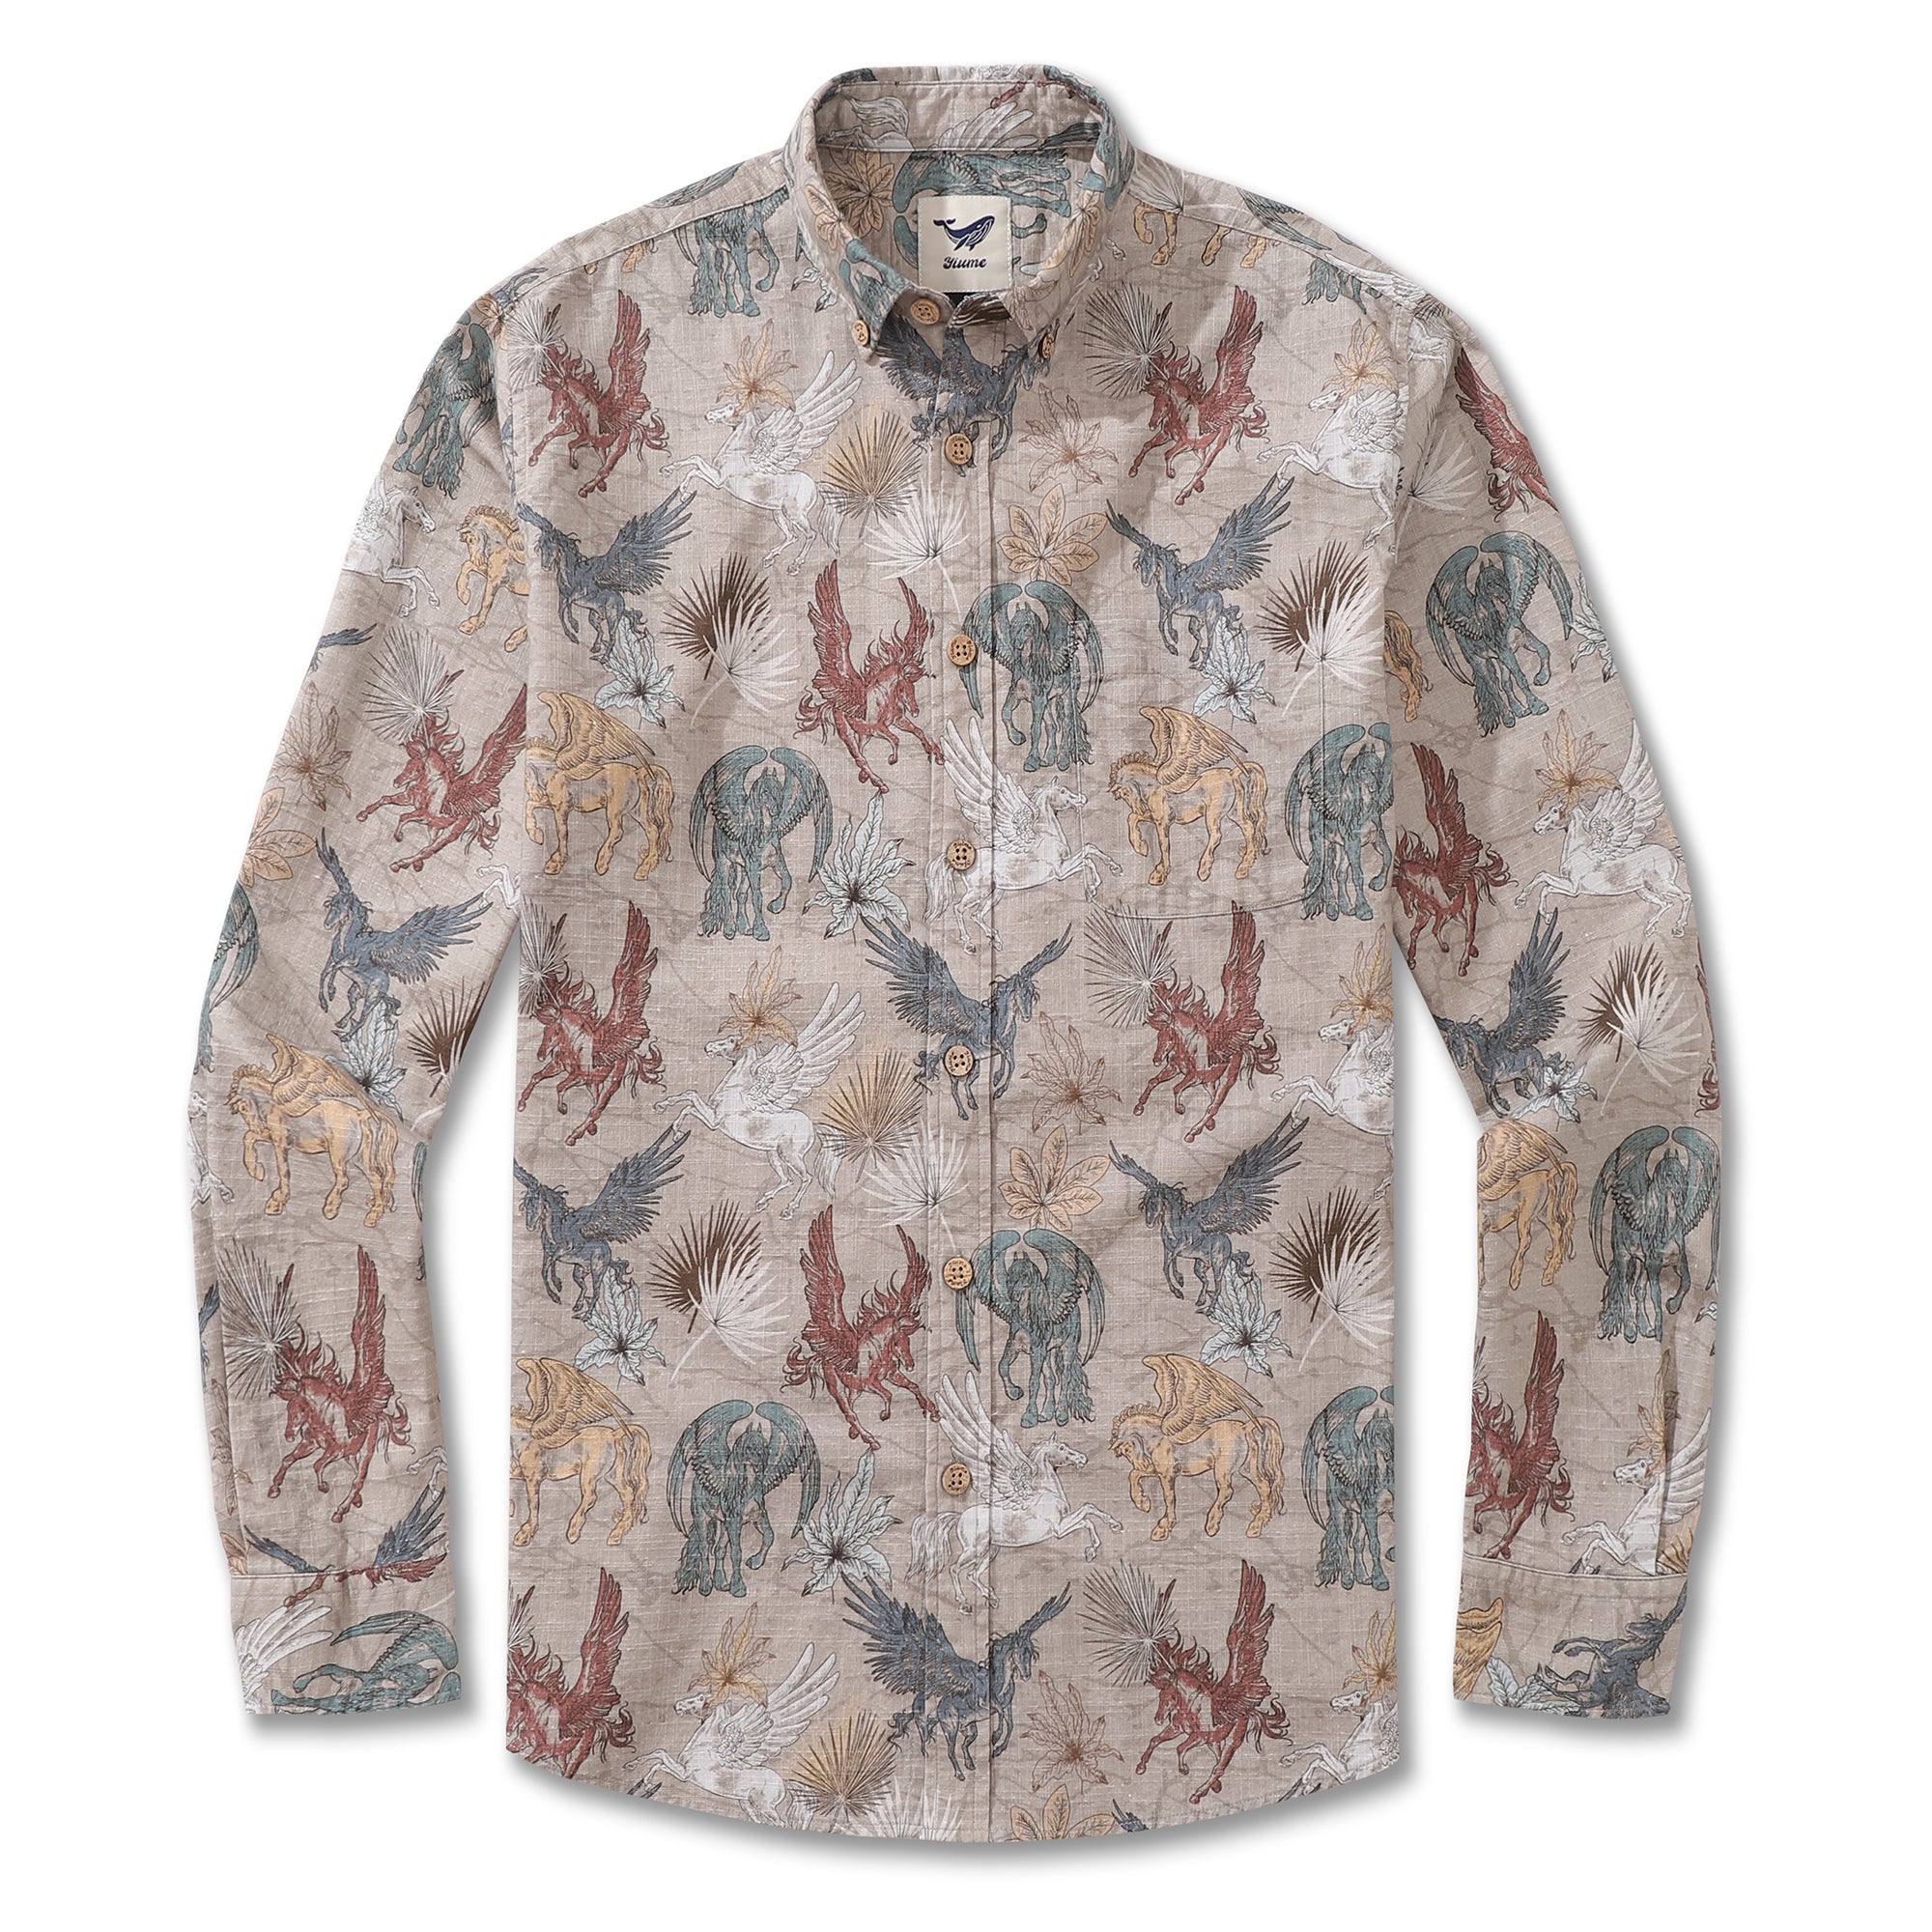 Men's Hawaiian Shirt Pegasus in Flight Cotton Button-down Long Sleeve Aloha Shirt